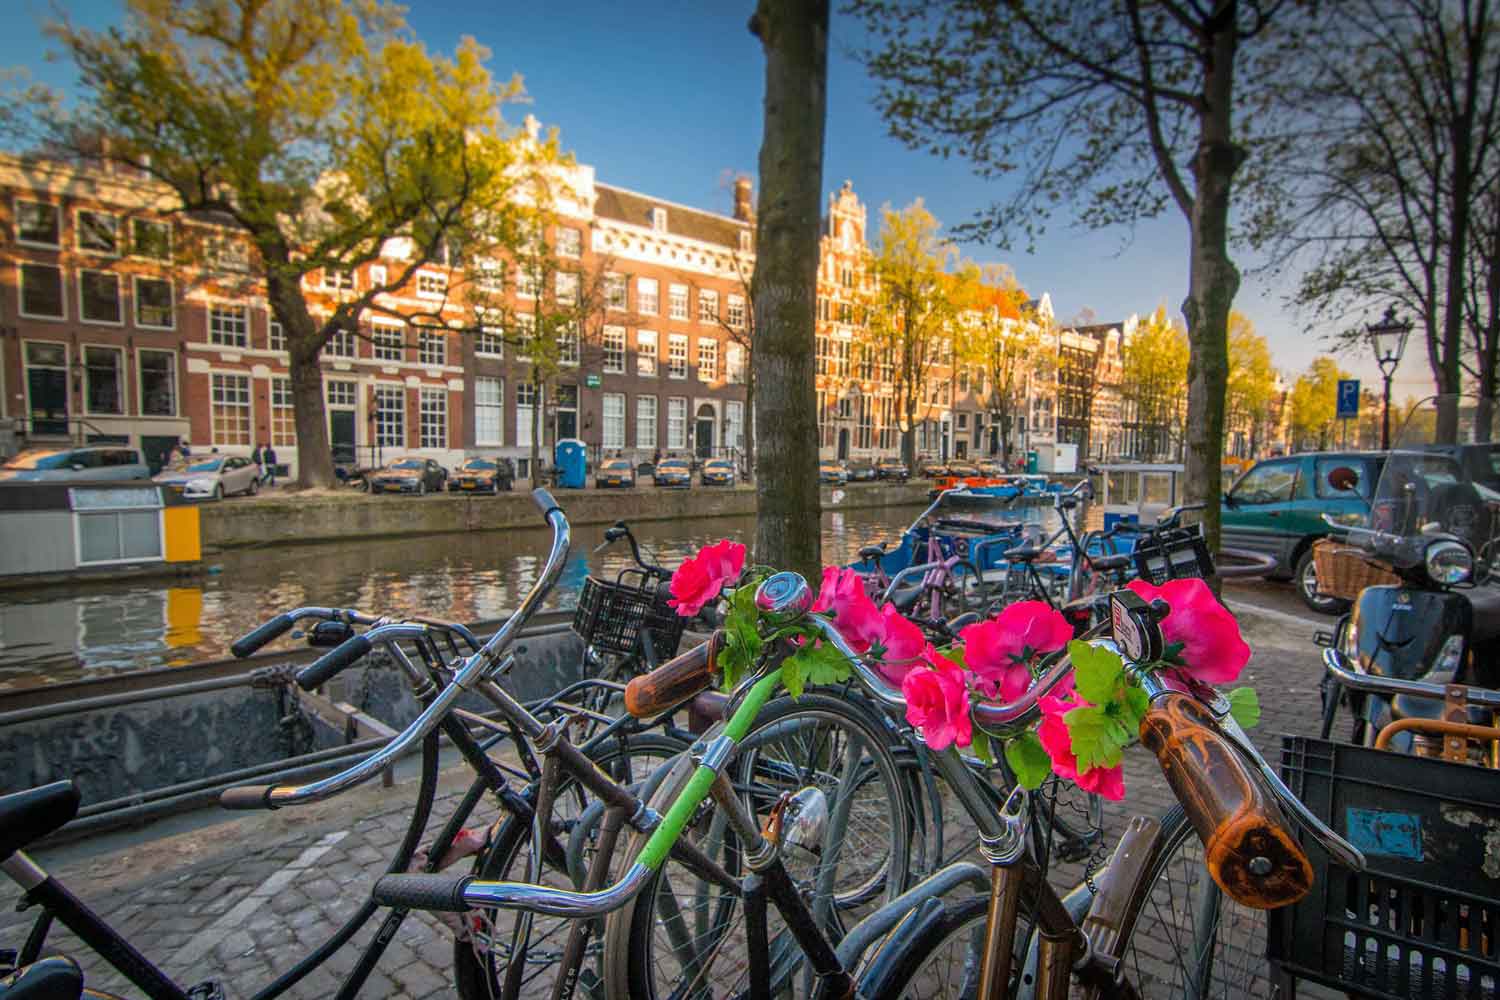 Reiseblogger verraten ihre Lieblingsplätze in Amsterdam